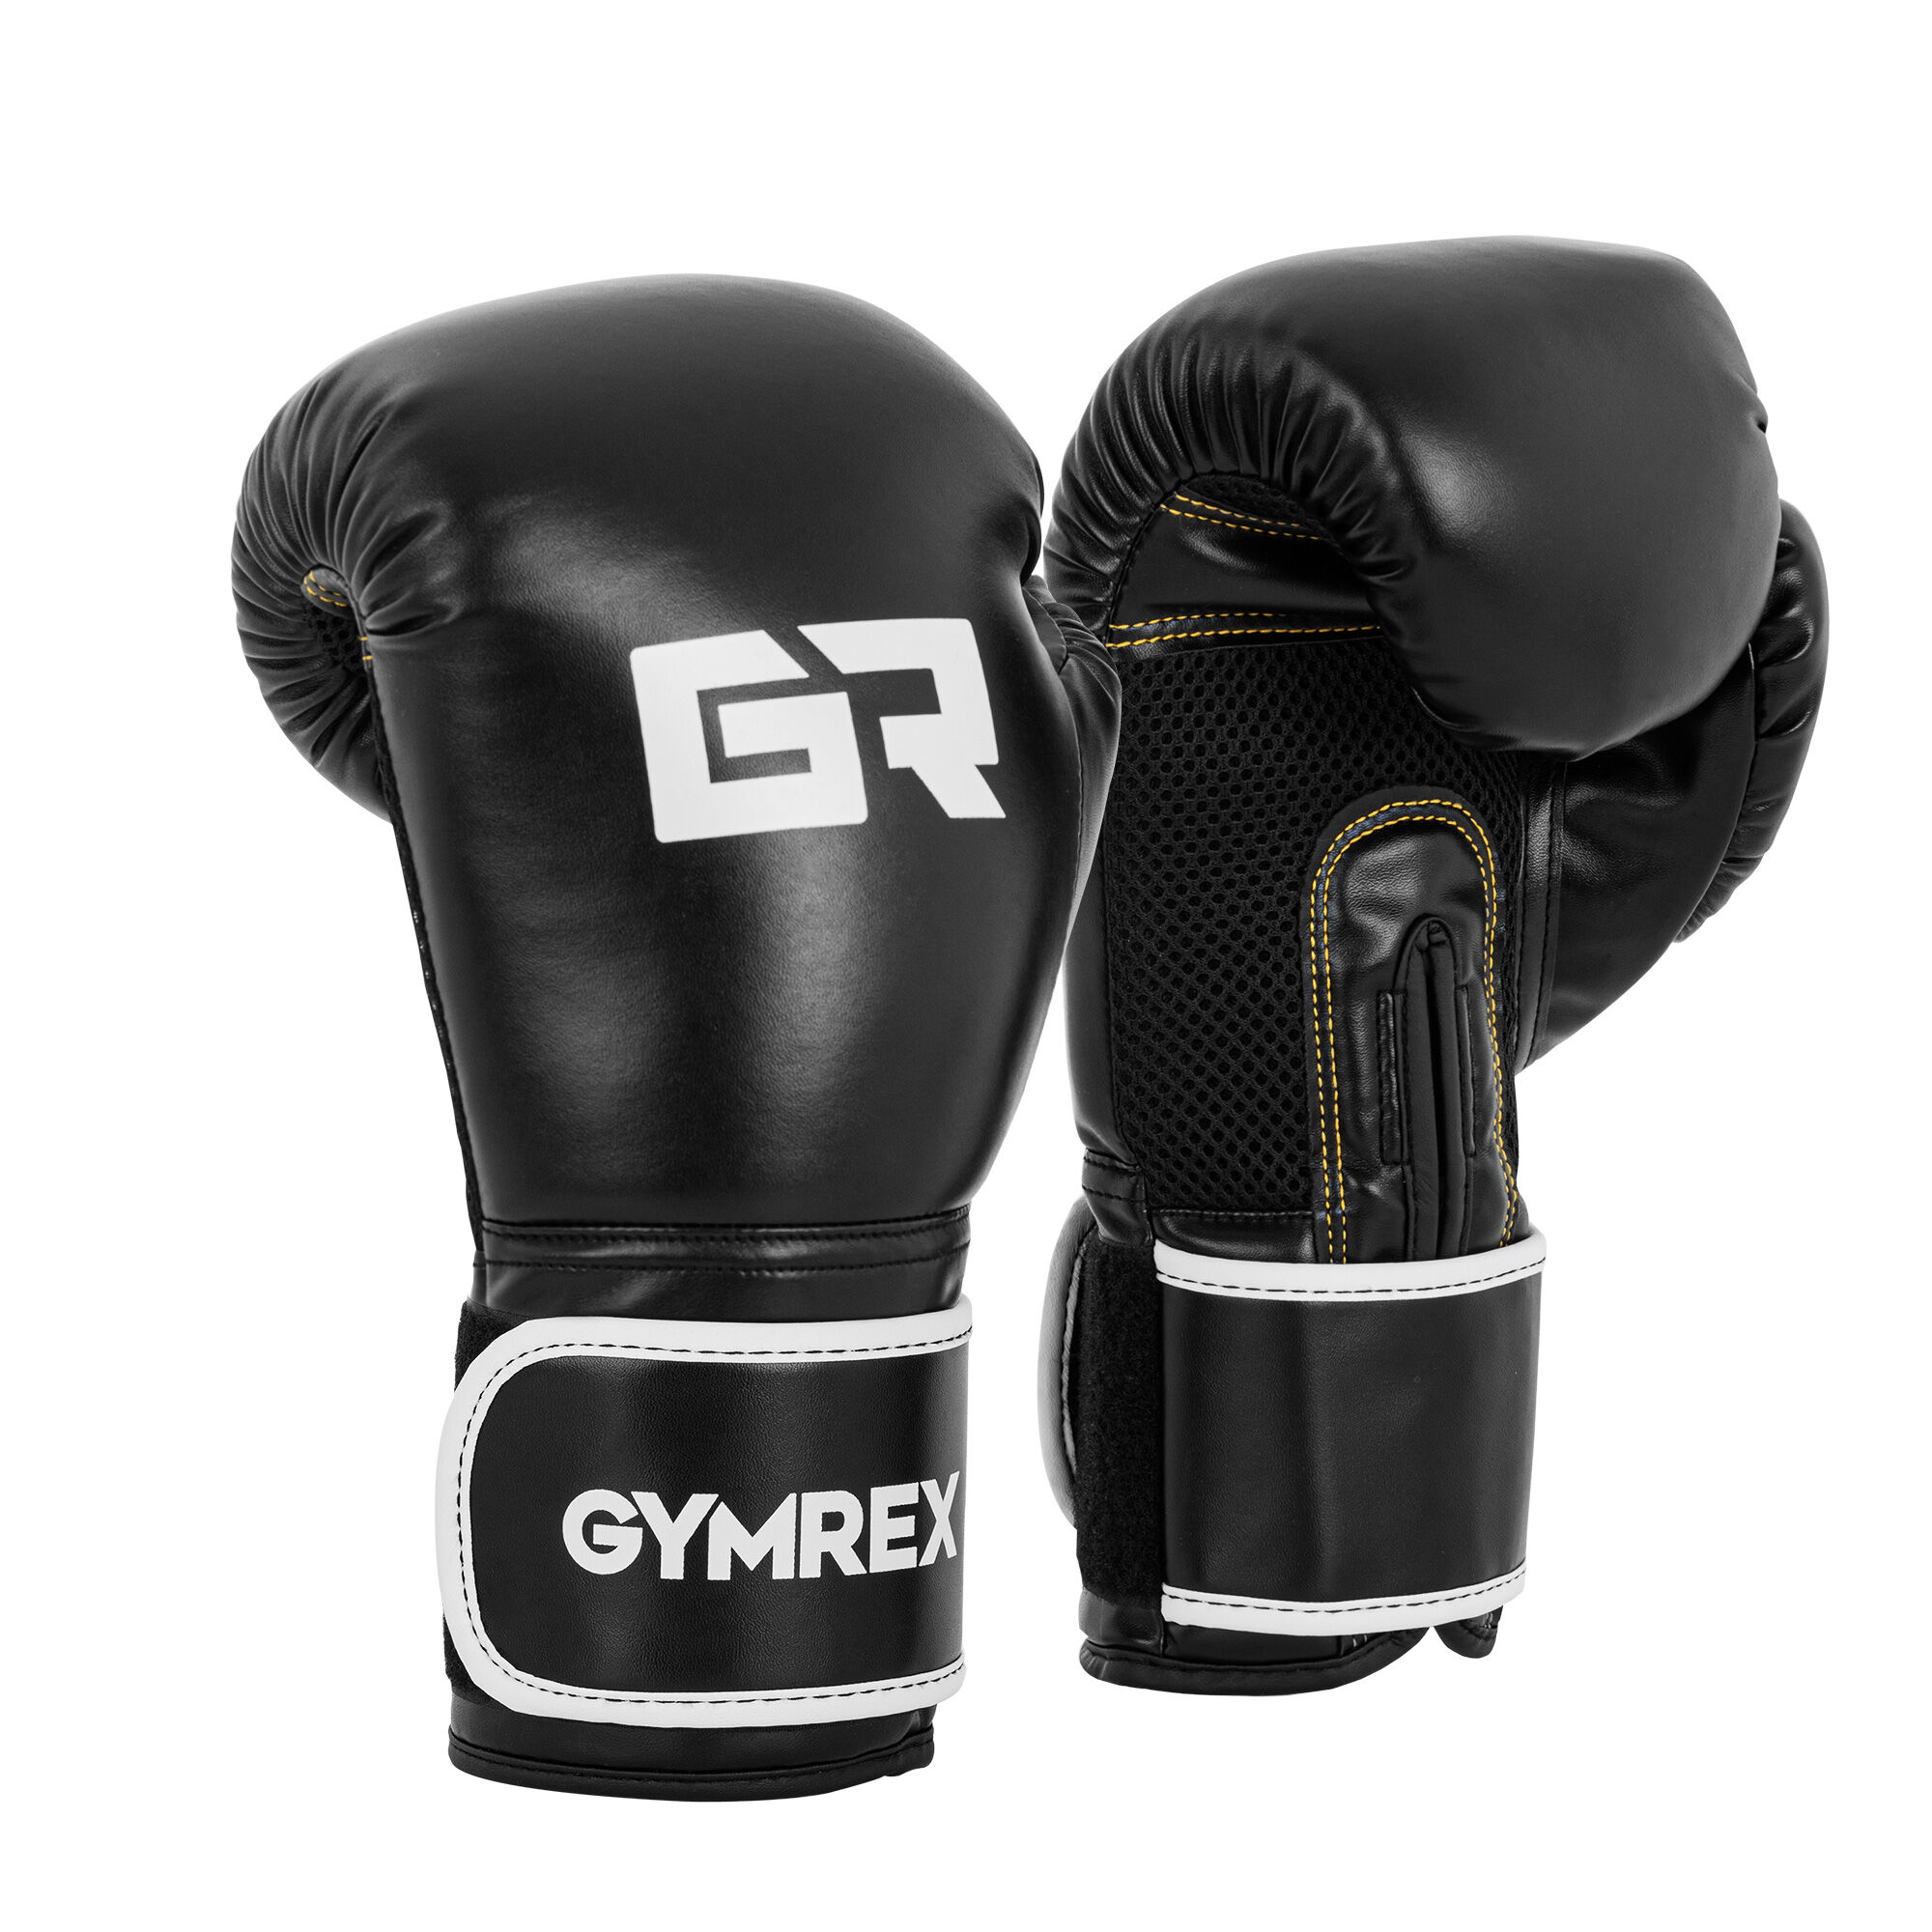 Gymrex Boxerské rukavice - 14 oz - síťovina uvnitř - černé GR-BG 14B